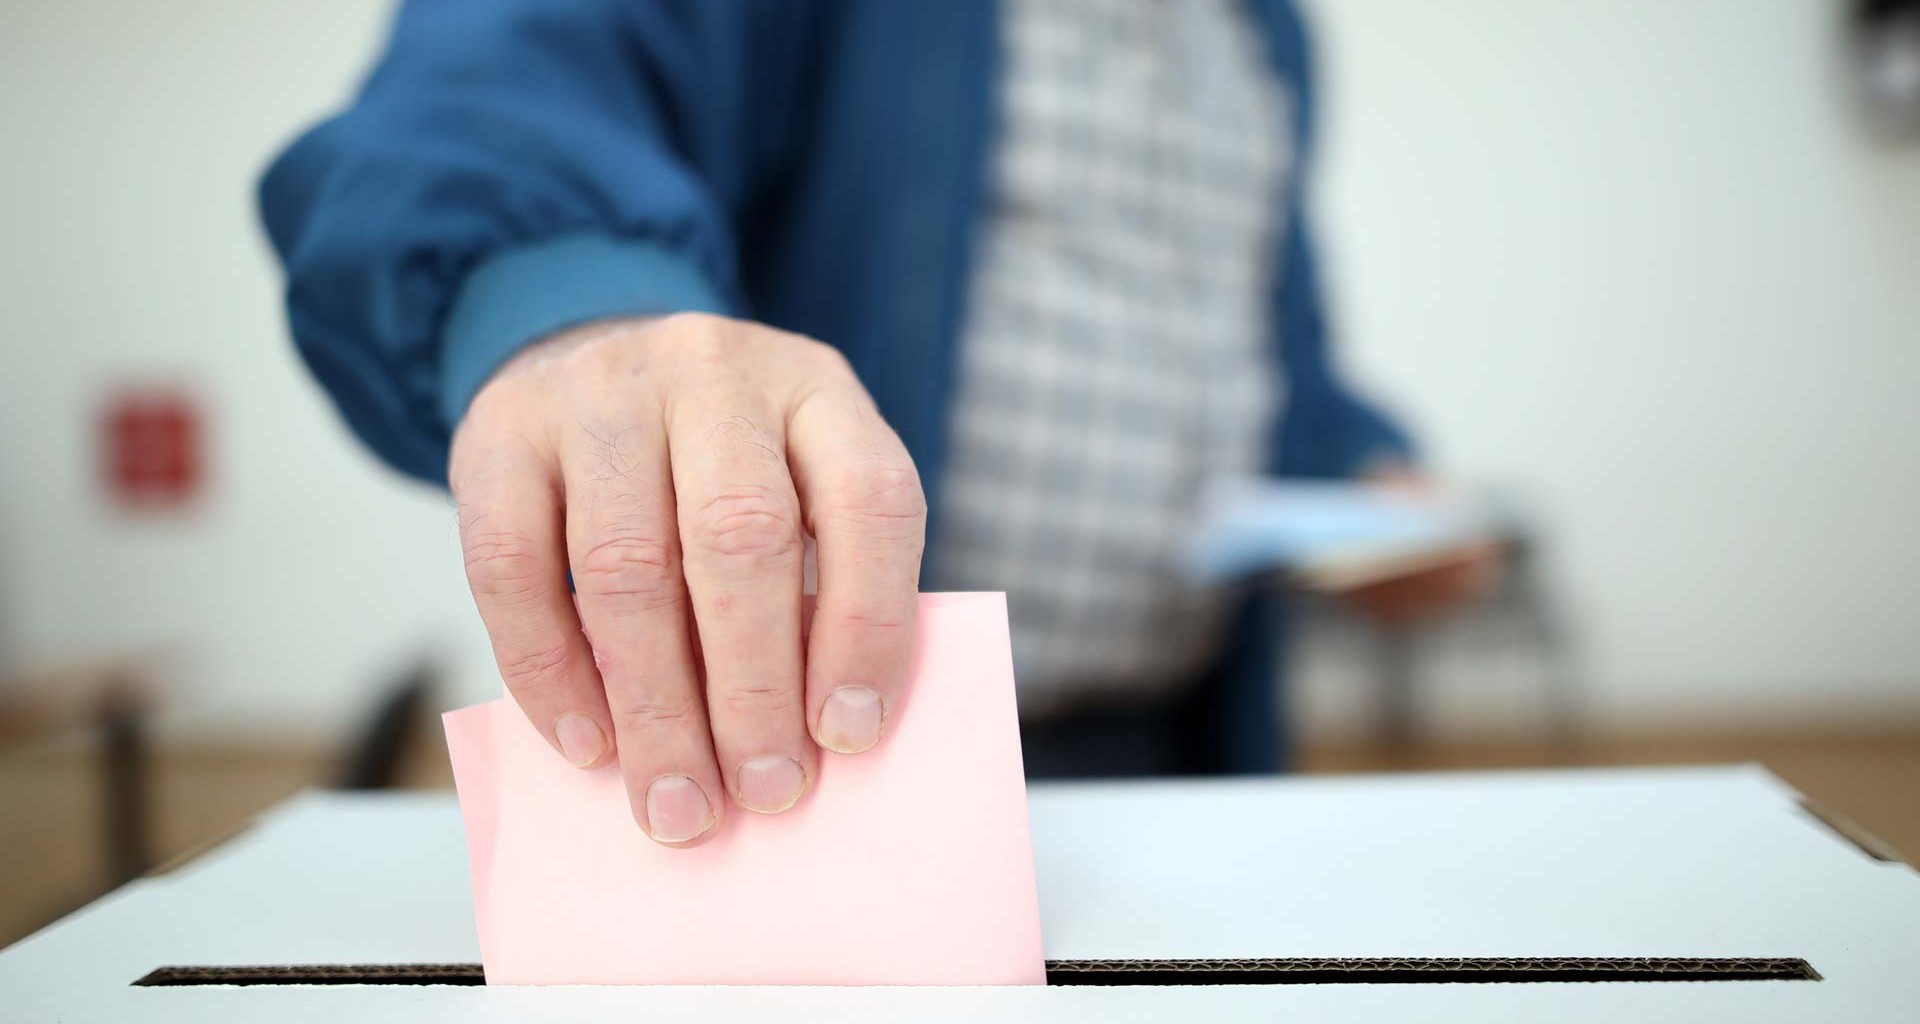 Ciudadano deja su voto en una casilla. Consulta las opciones en la consulta de revocación de mandato